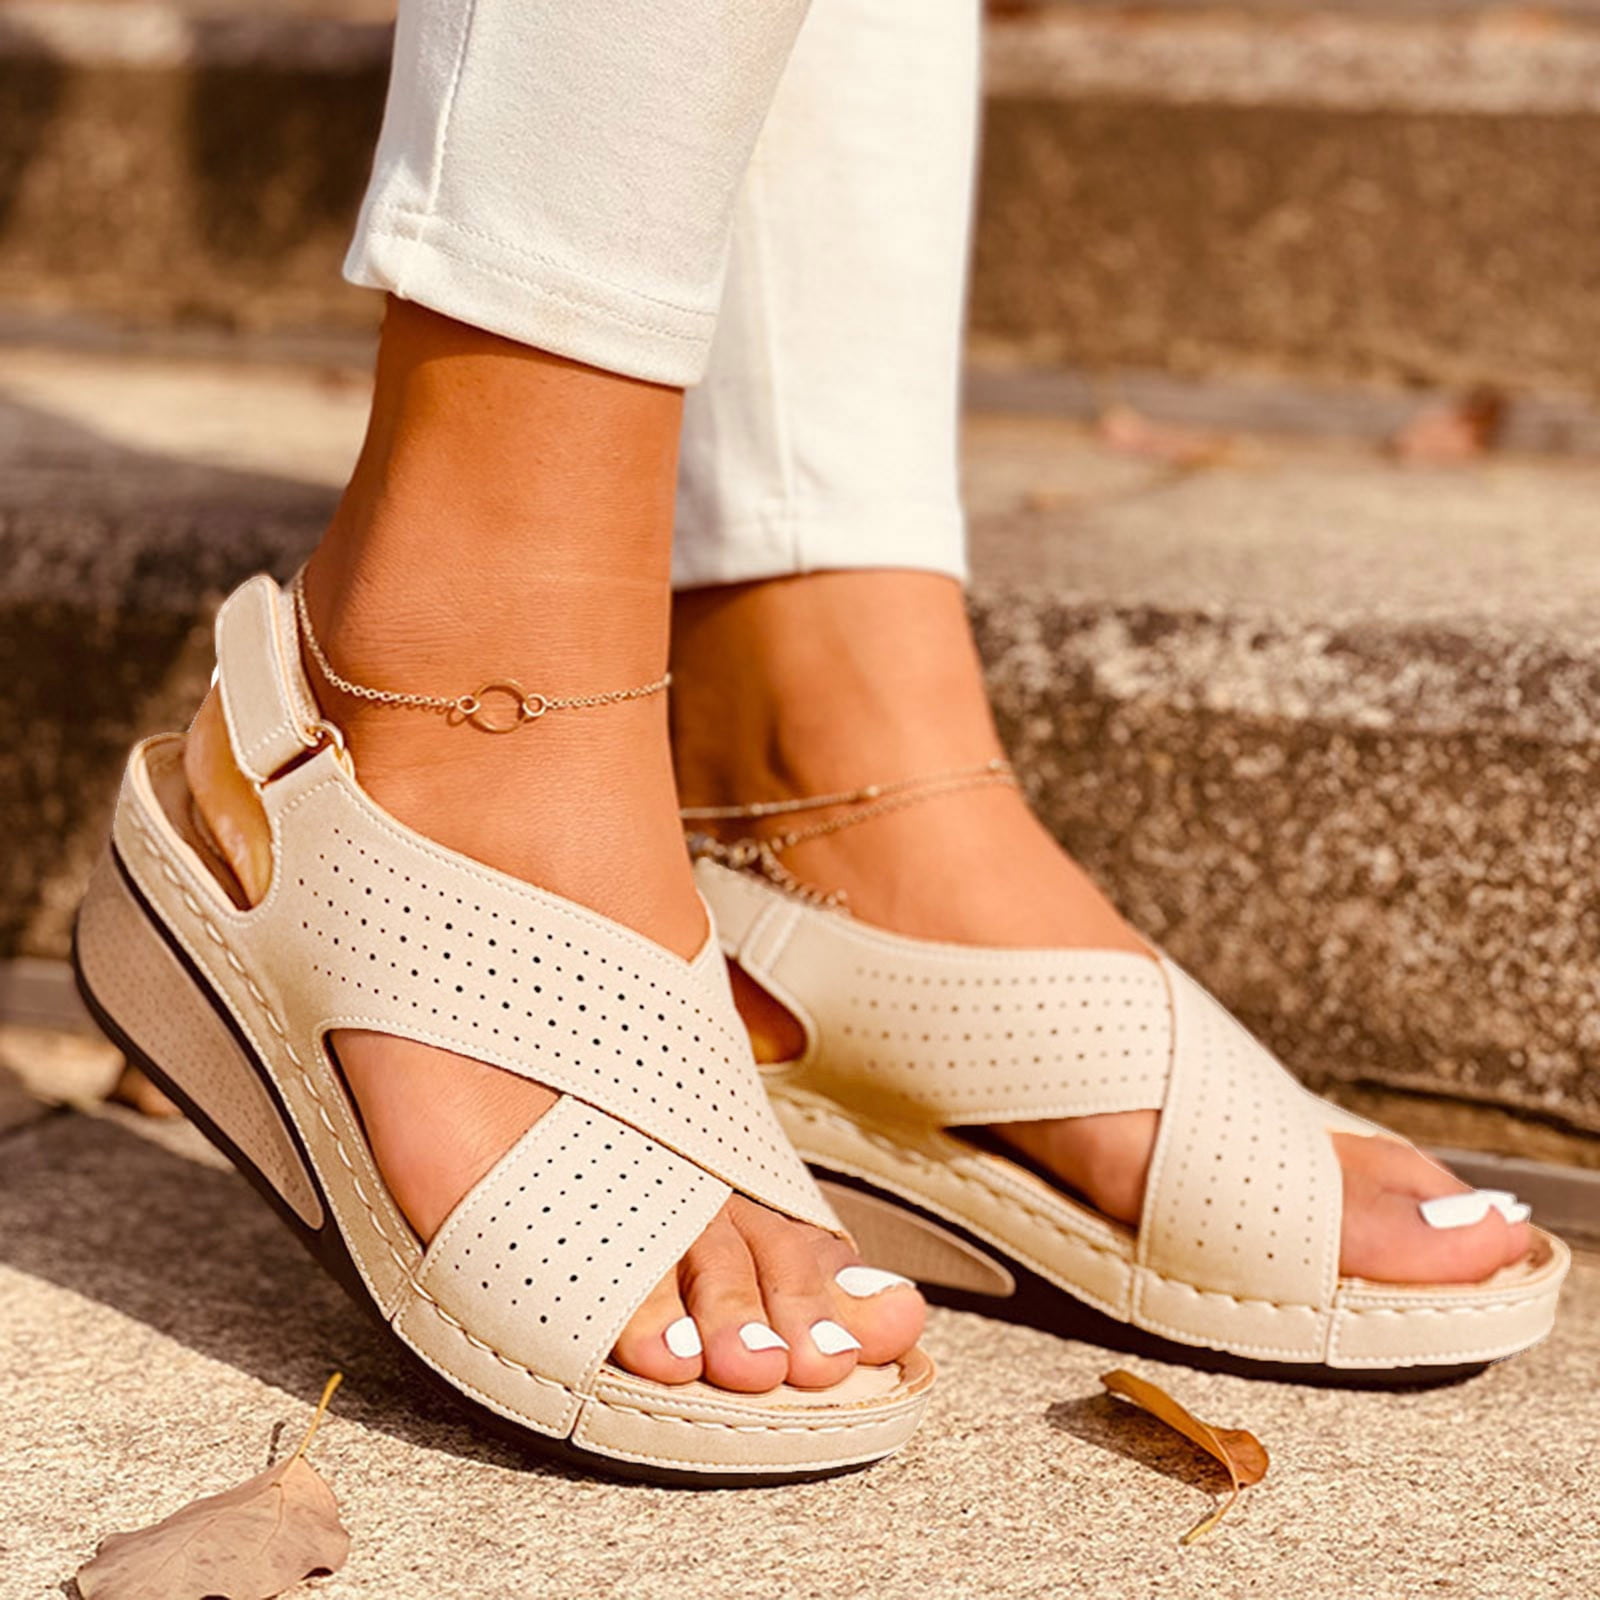 mtvxesu Women's Flower Wedges Casual Slope Heel Sandals Comfortable  Slippers Beach Roman Sandals Orthopedic Sandals # Lighten Deals of the Day  Prime